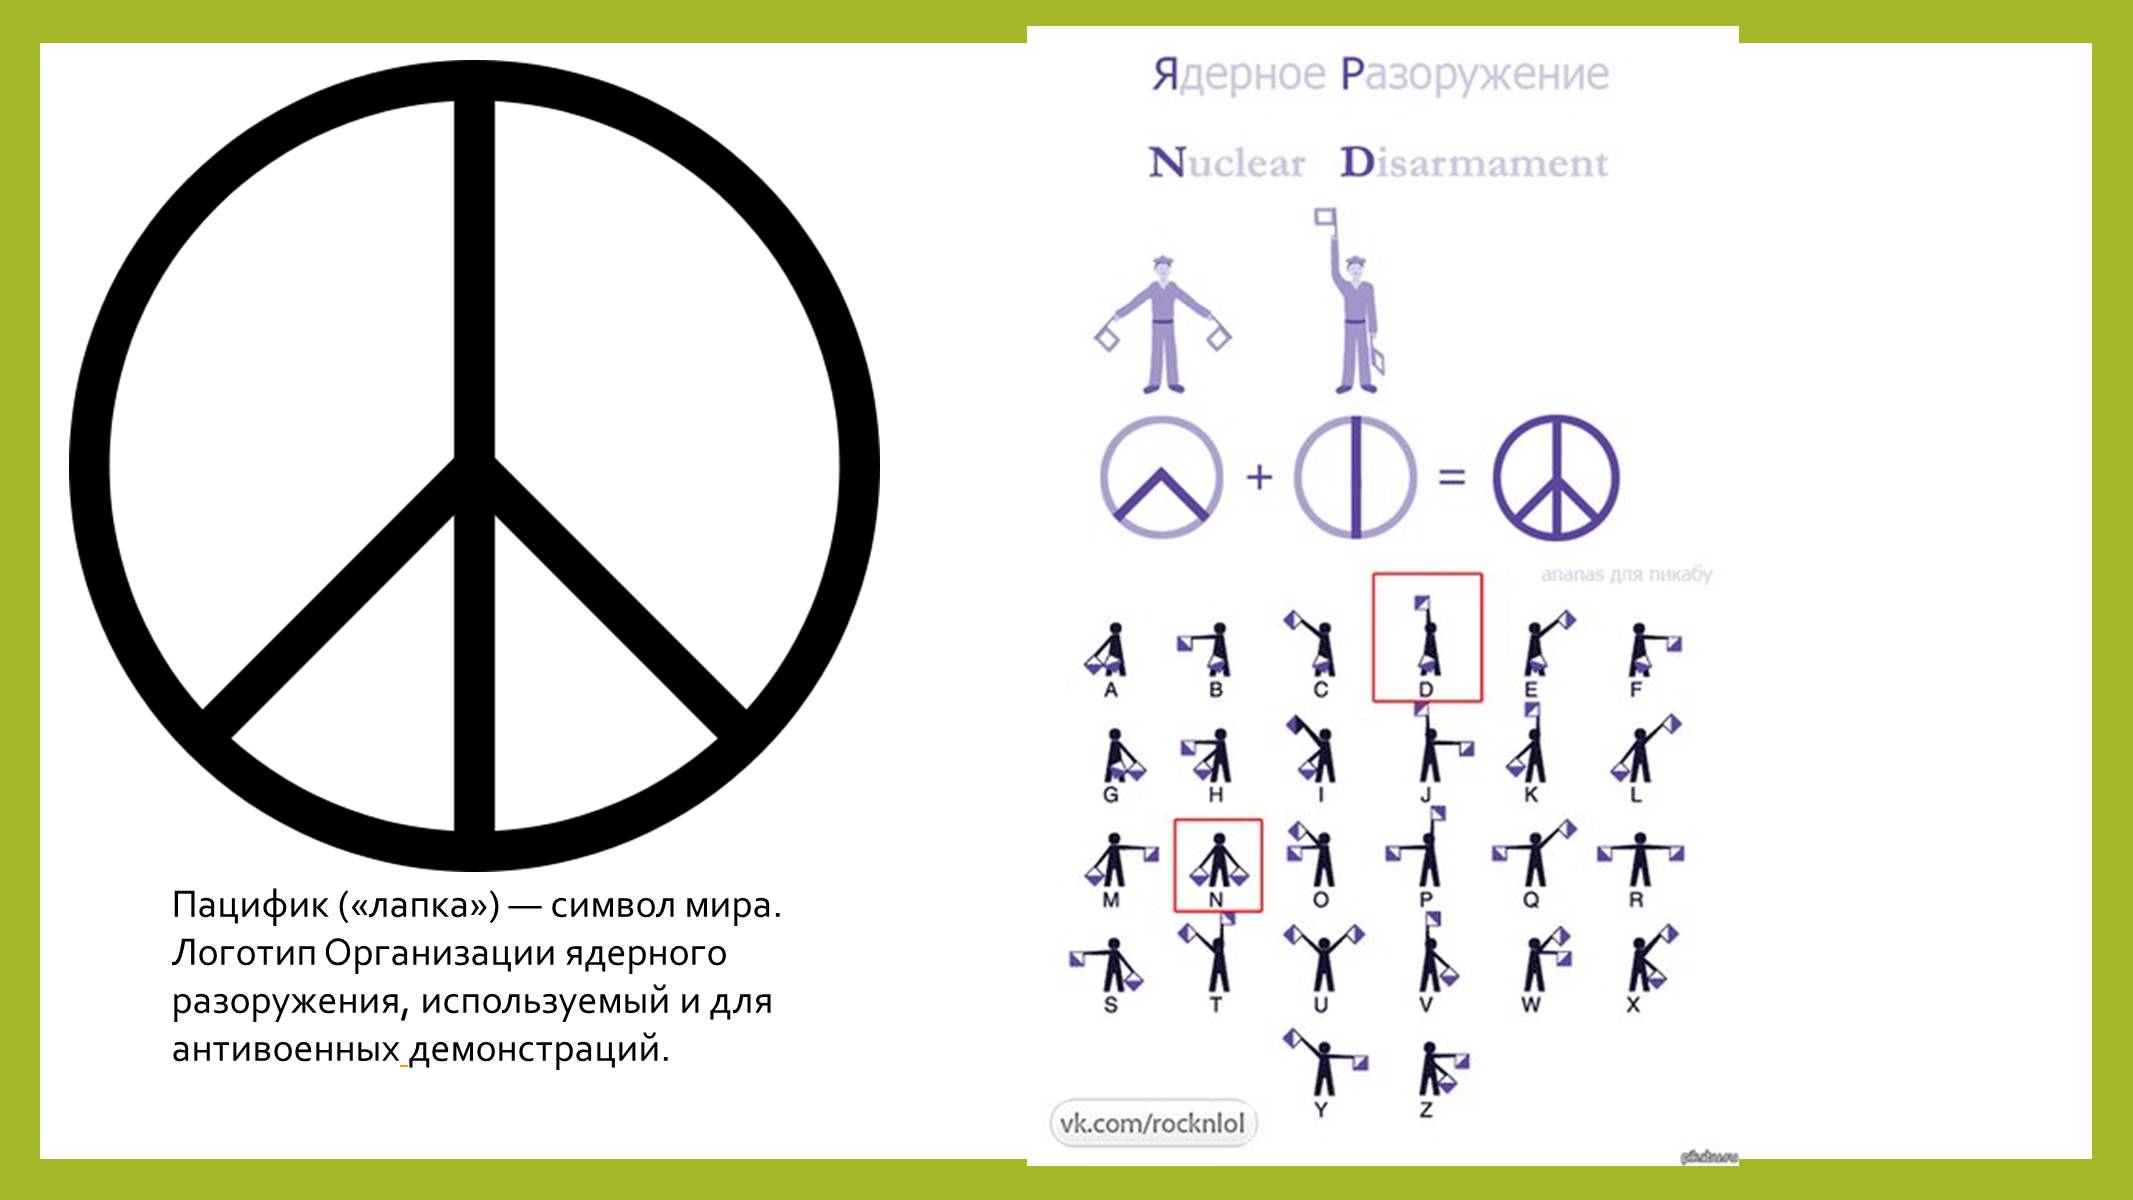 Что для тебя значит мир круг. Пацифистский символ. Ядерное разоружение знак. Антивоенные символы. Знак Пацифик что означает.